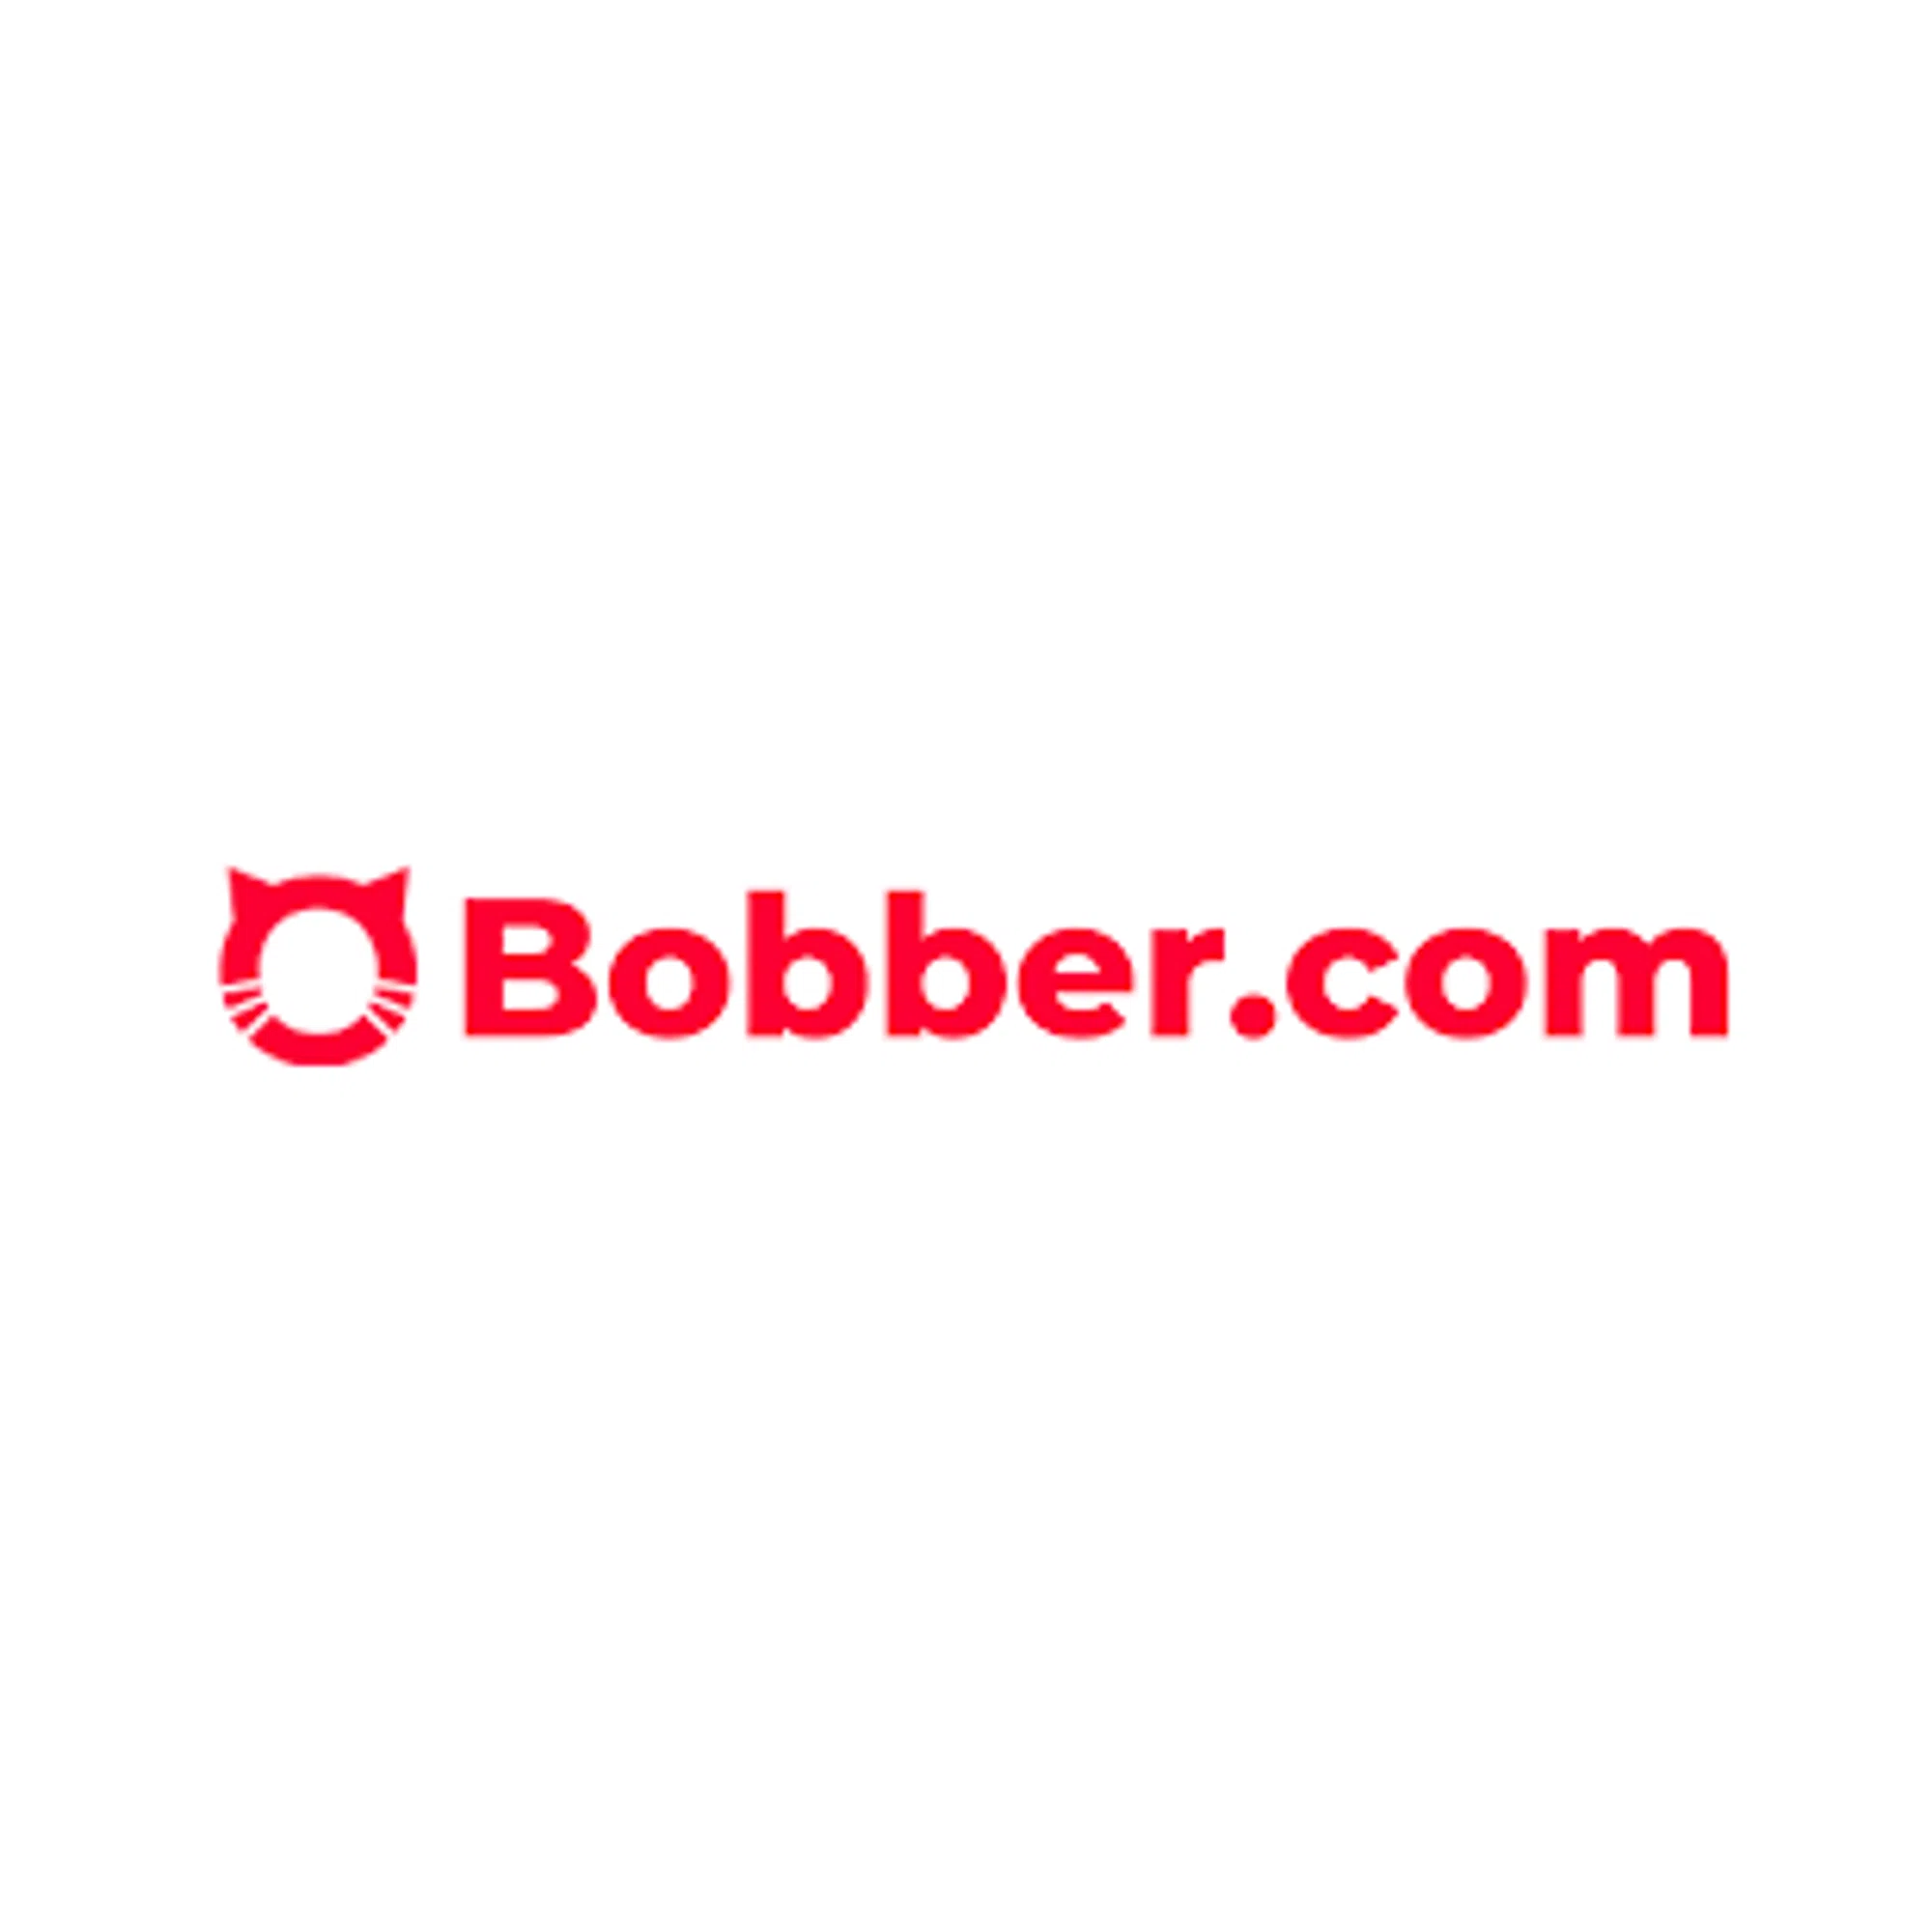 bobber.com logo